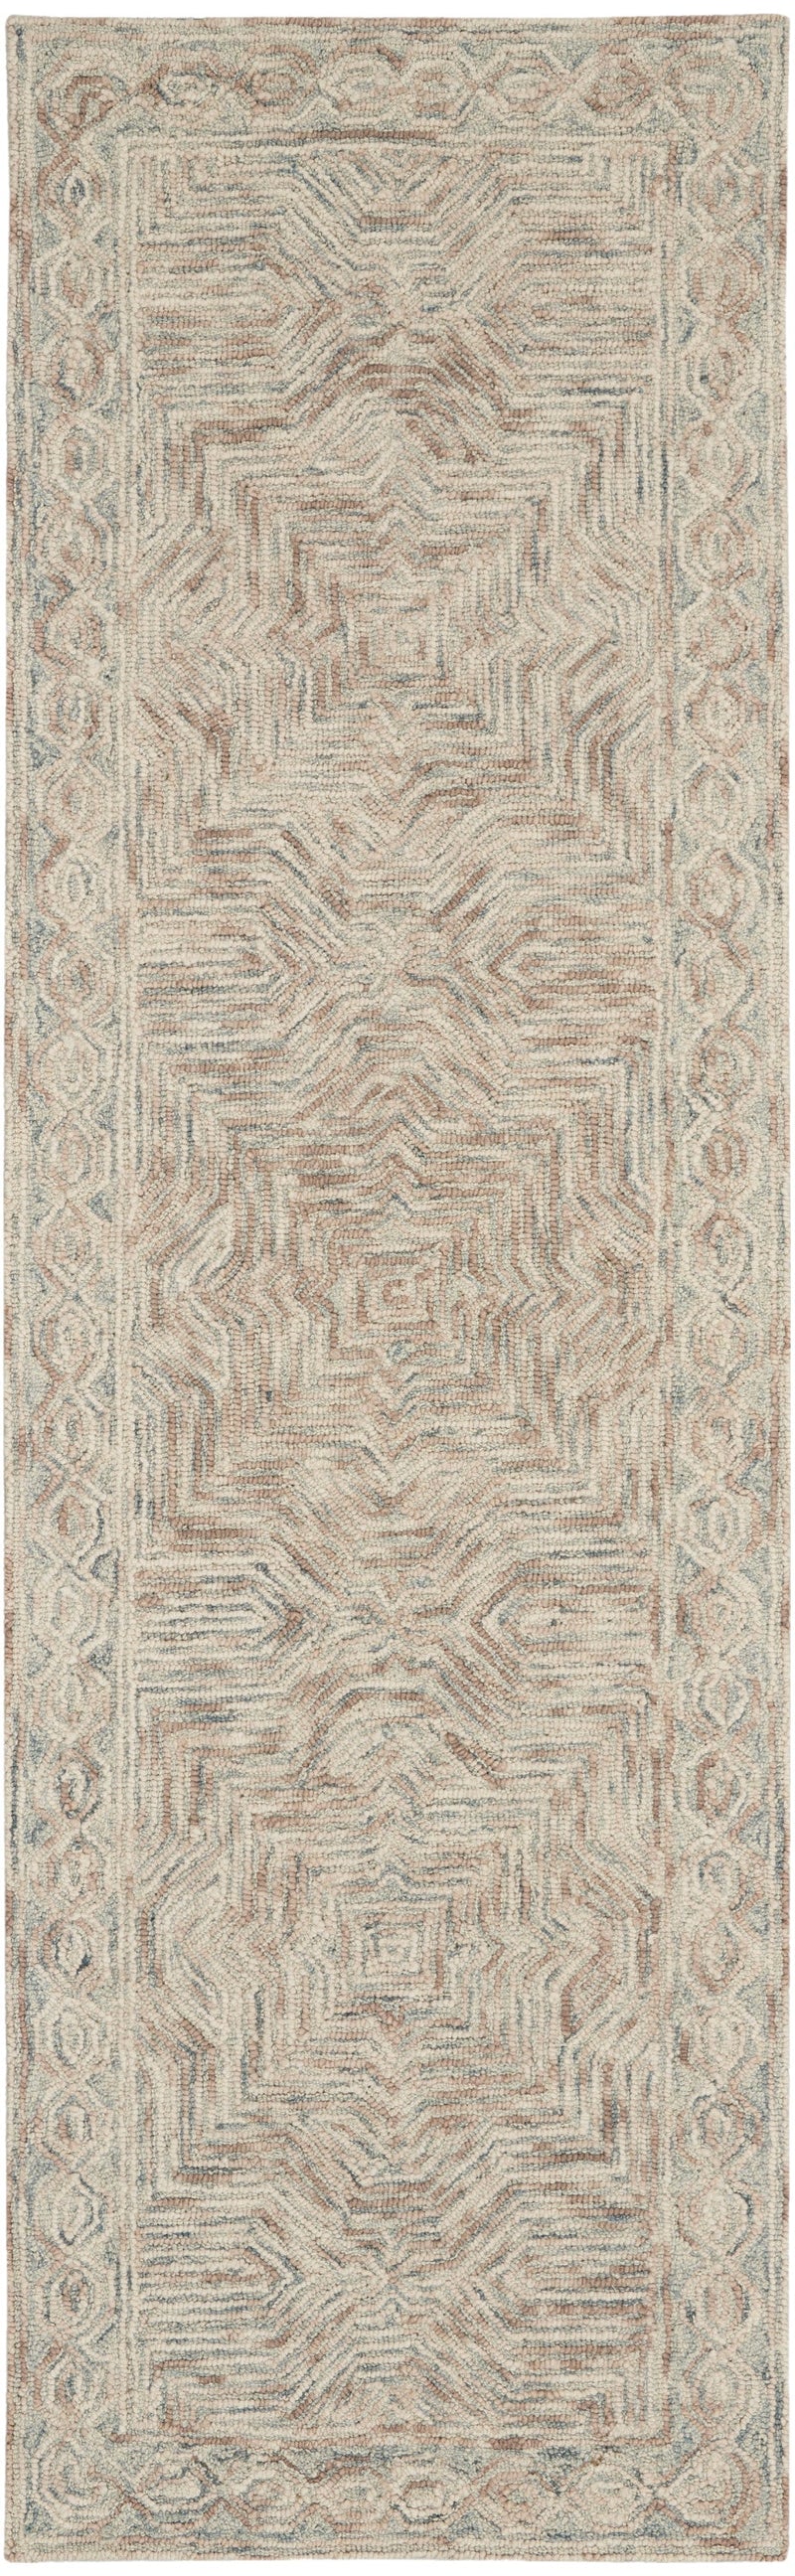 media image for interlock handmade blue ivory rug by nourison 99446785985 redo 2 261